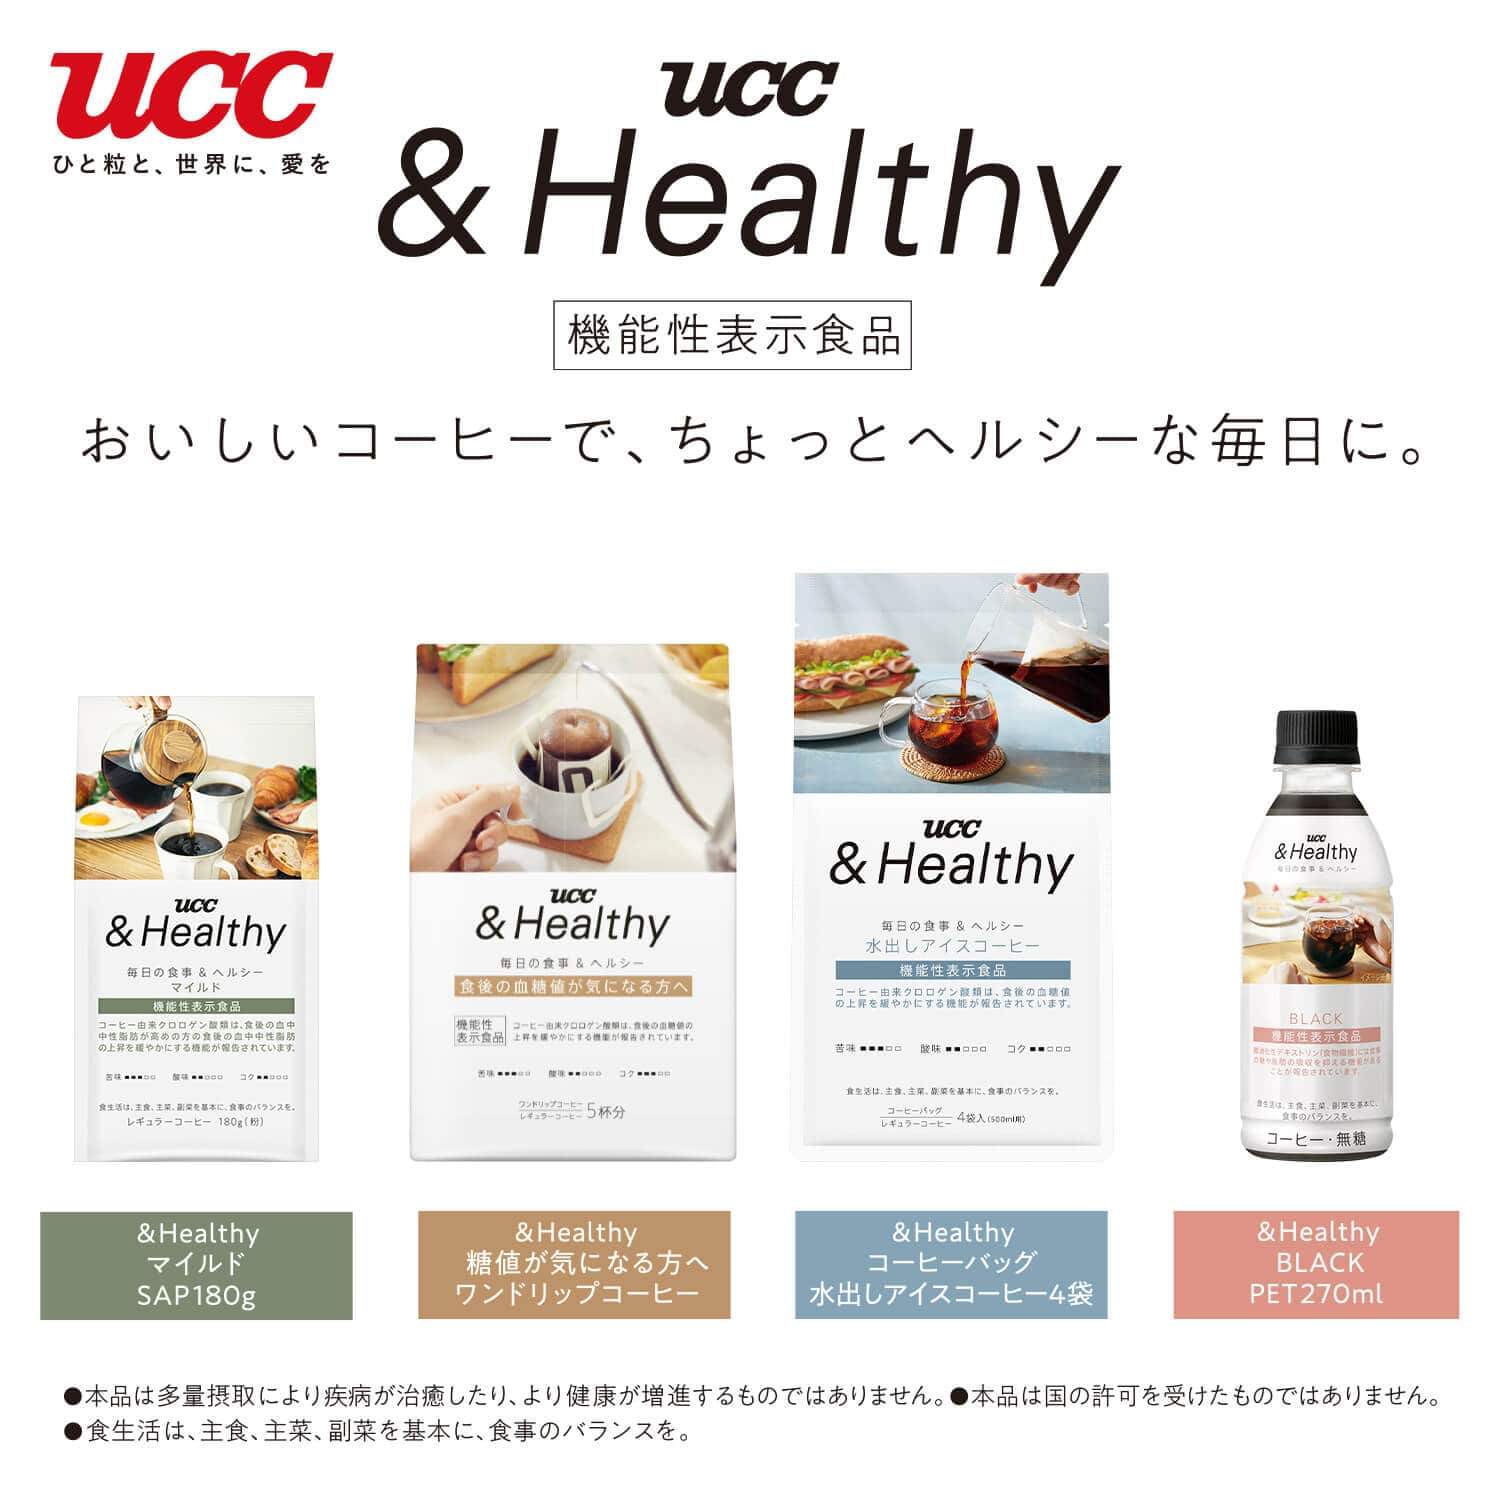 【アウトレット】UCC &Healthy BLACK PET270ml